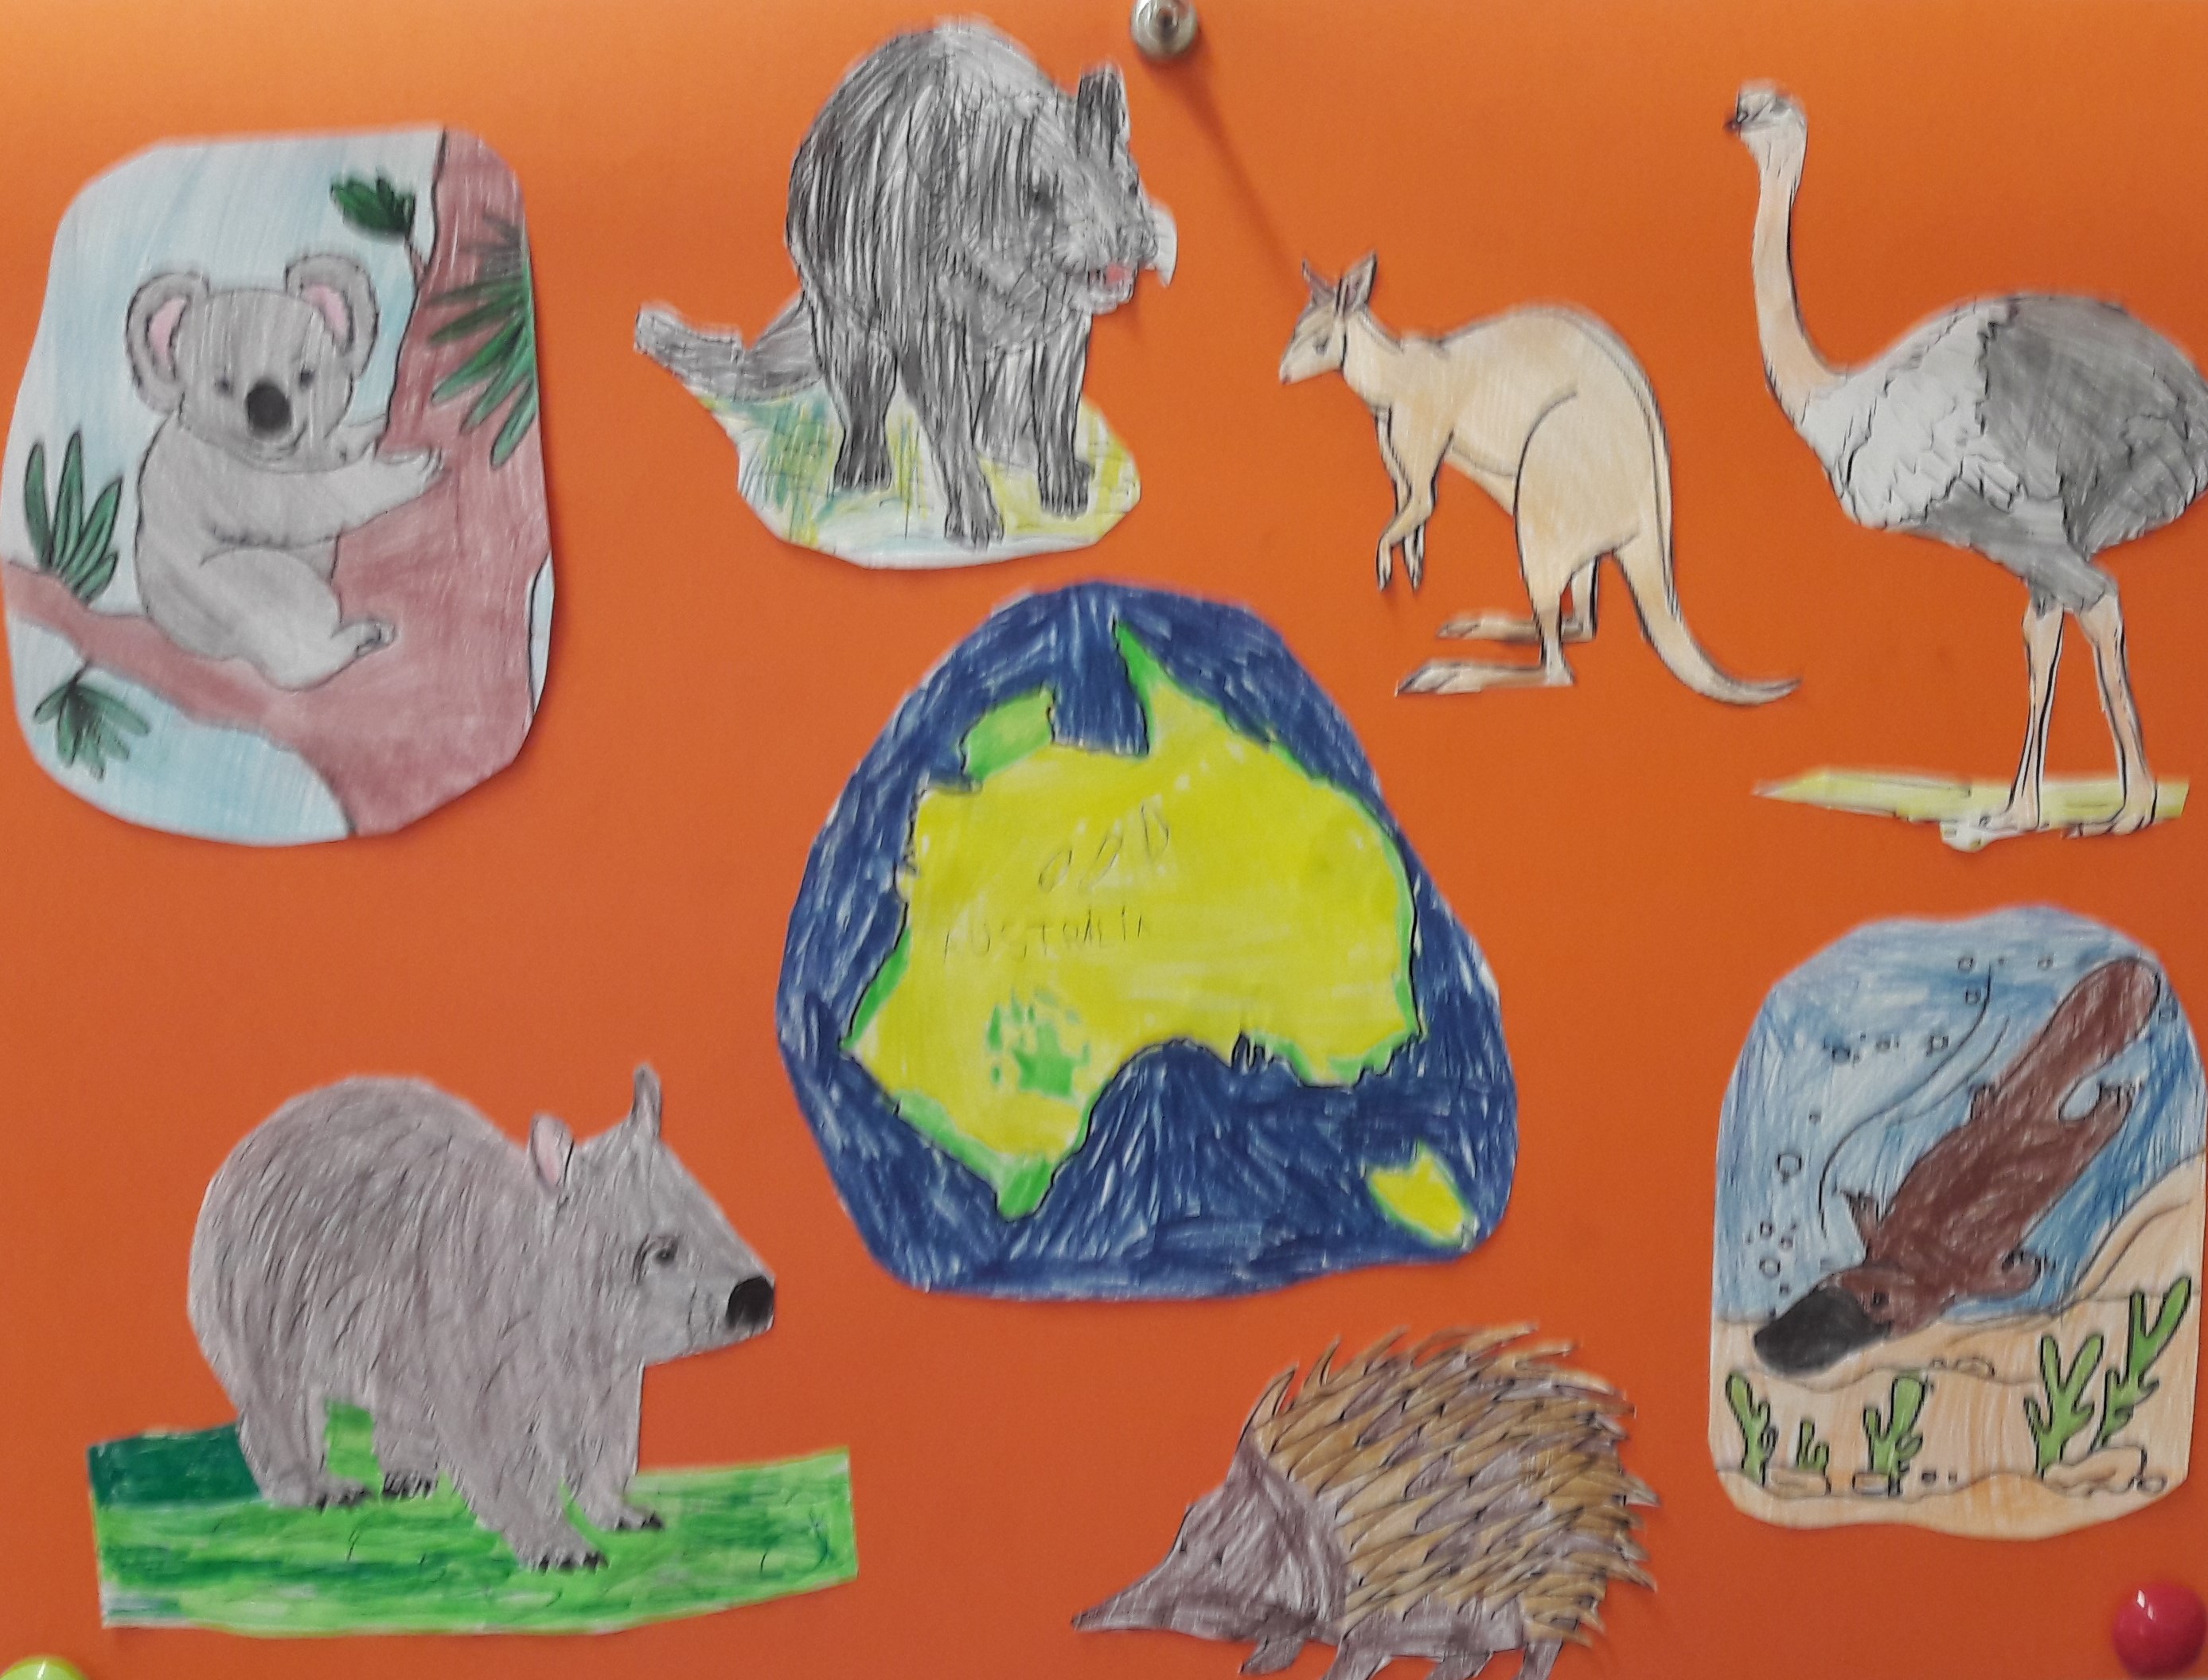 Na pomarańczowej kartce ułożono rysunki zwierząt zamieszkujących Australię, m. in.: koalę, strusia, kangura, dziobaka.